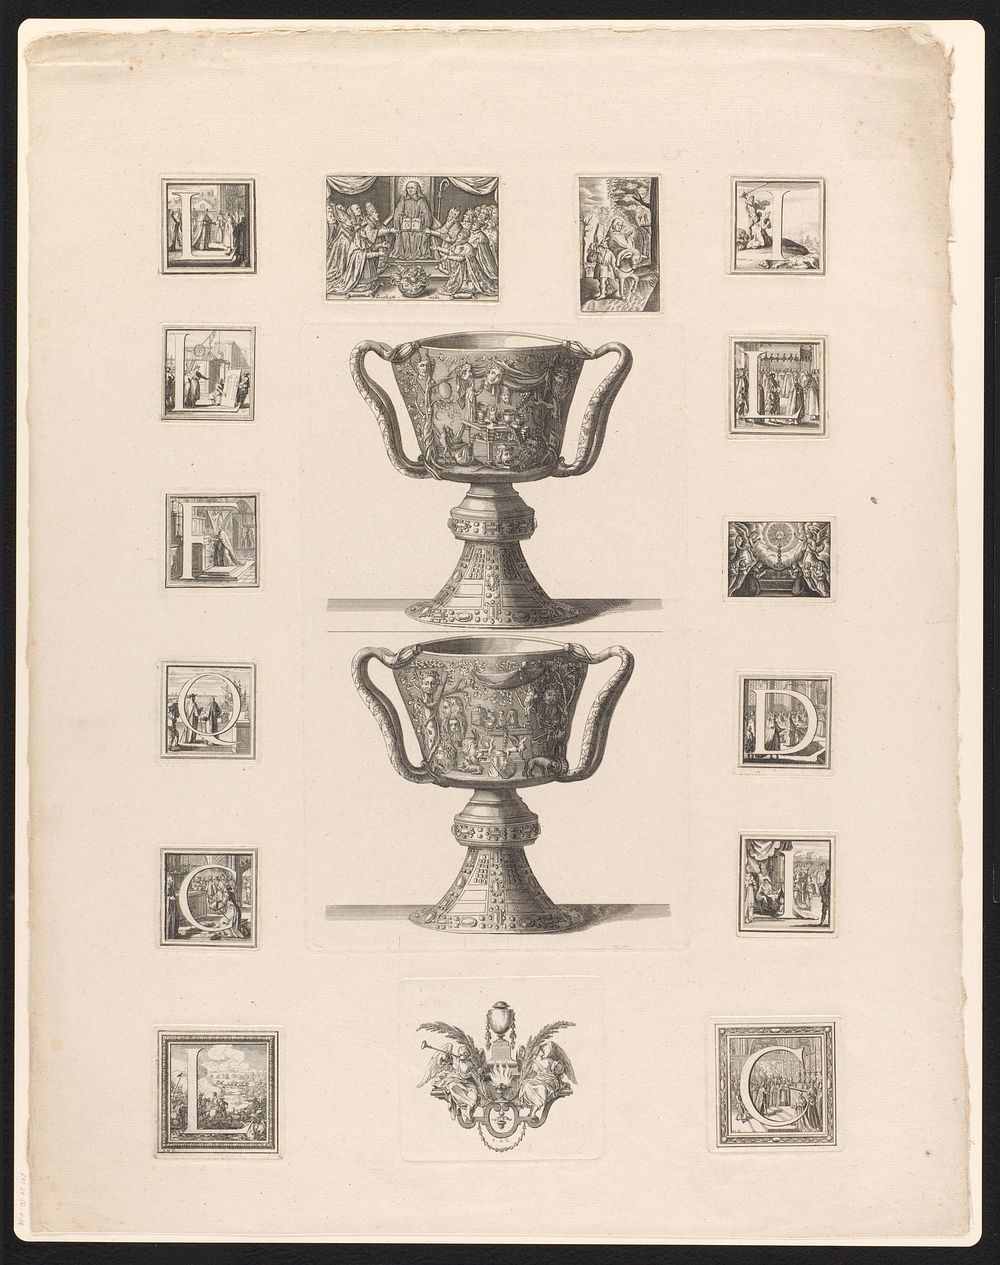 Voor- en achteraanzicht van de Coupe des Ptolémées met rondom vignetten met letters (1647 - 1714) by Sébastien Leclerc and…